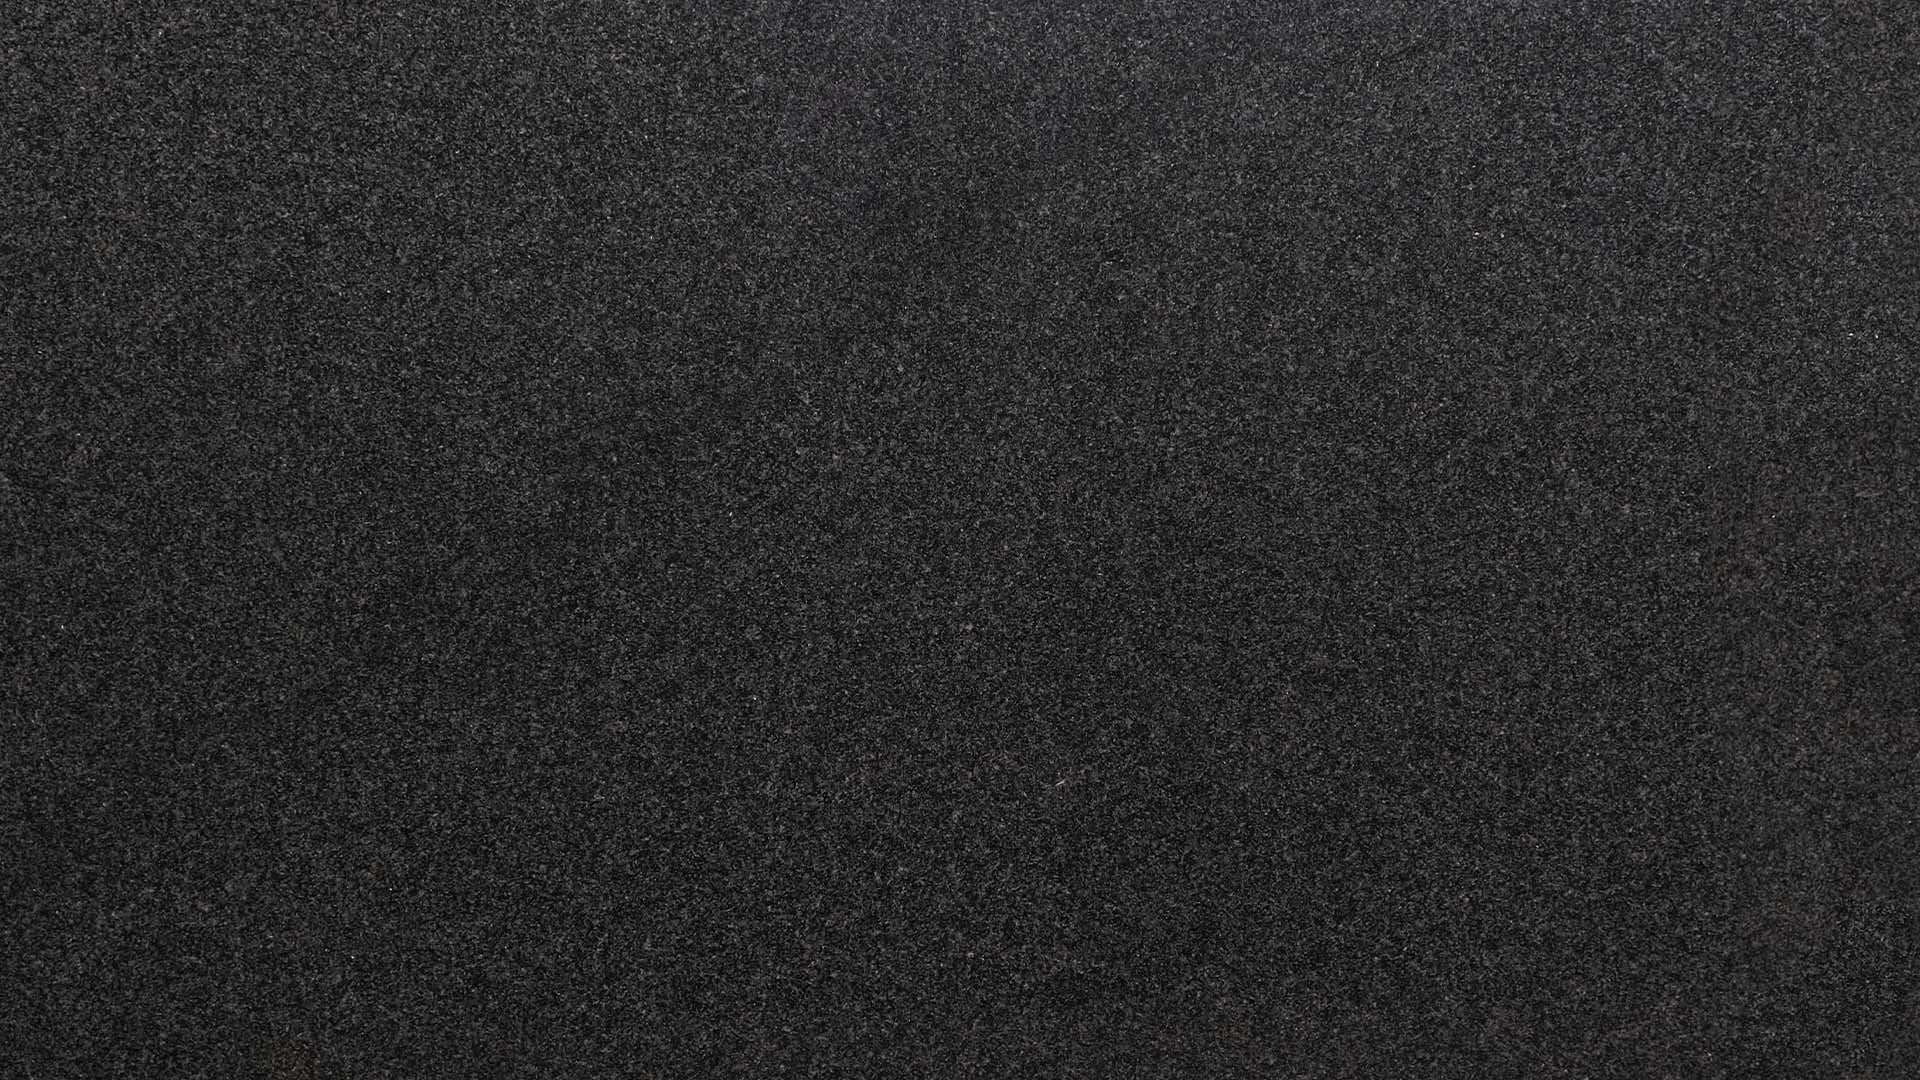 Naturstein Küchenarbeitsplatte mit schwarzer Grundfarbe in poliert oder matt mit feinen weißen Sprenklern wie ein Sternenhimmel in dunkler Nacht in der Farbe Nero Africa Impala.